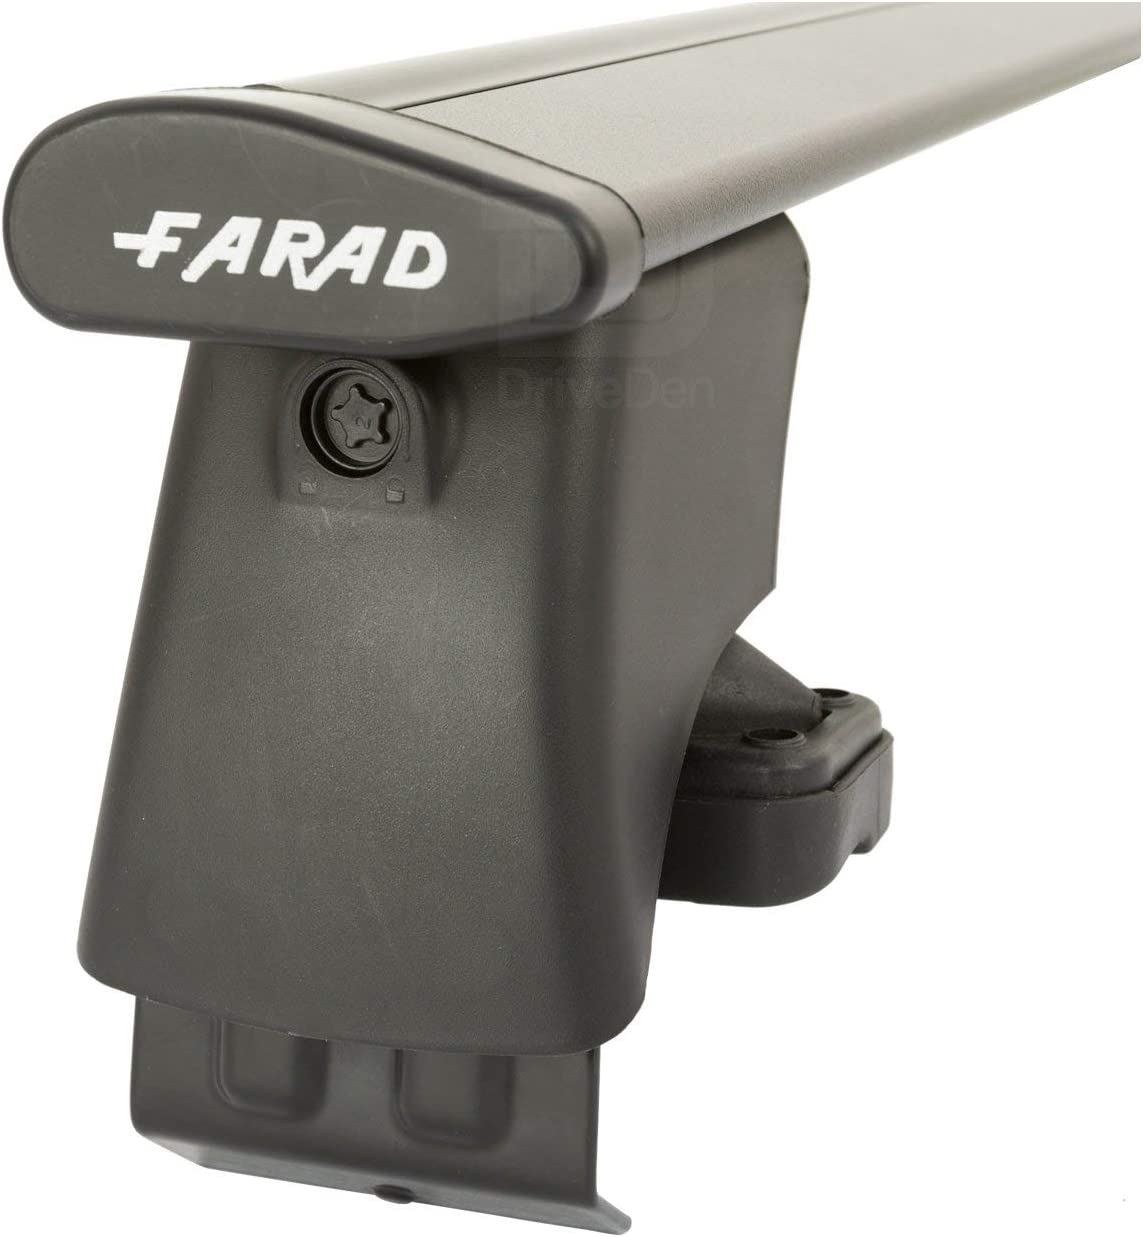 FARAD-Kit H2 per barre portatutto - Honda Jazz 2002-2008 (senza corrimano)